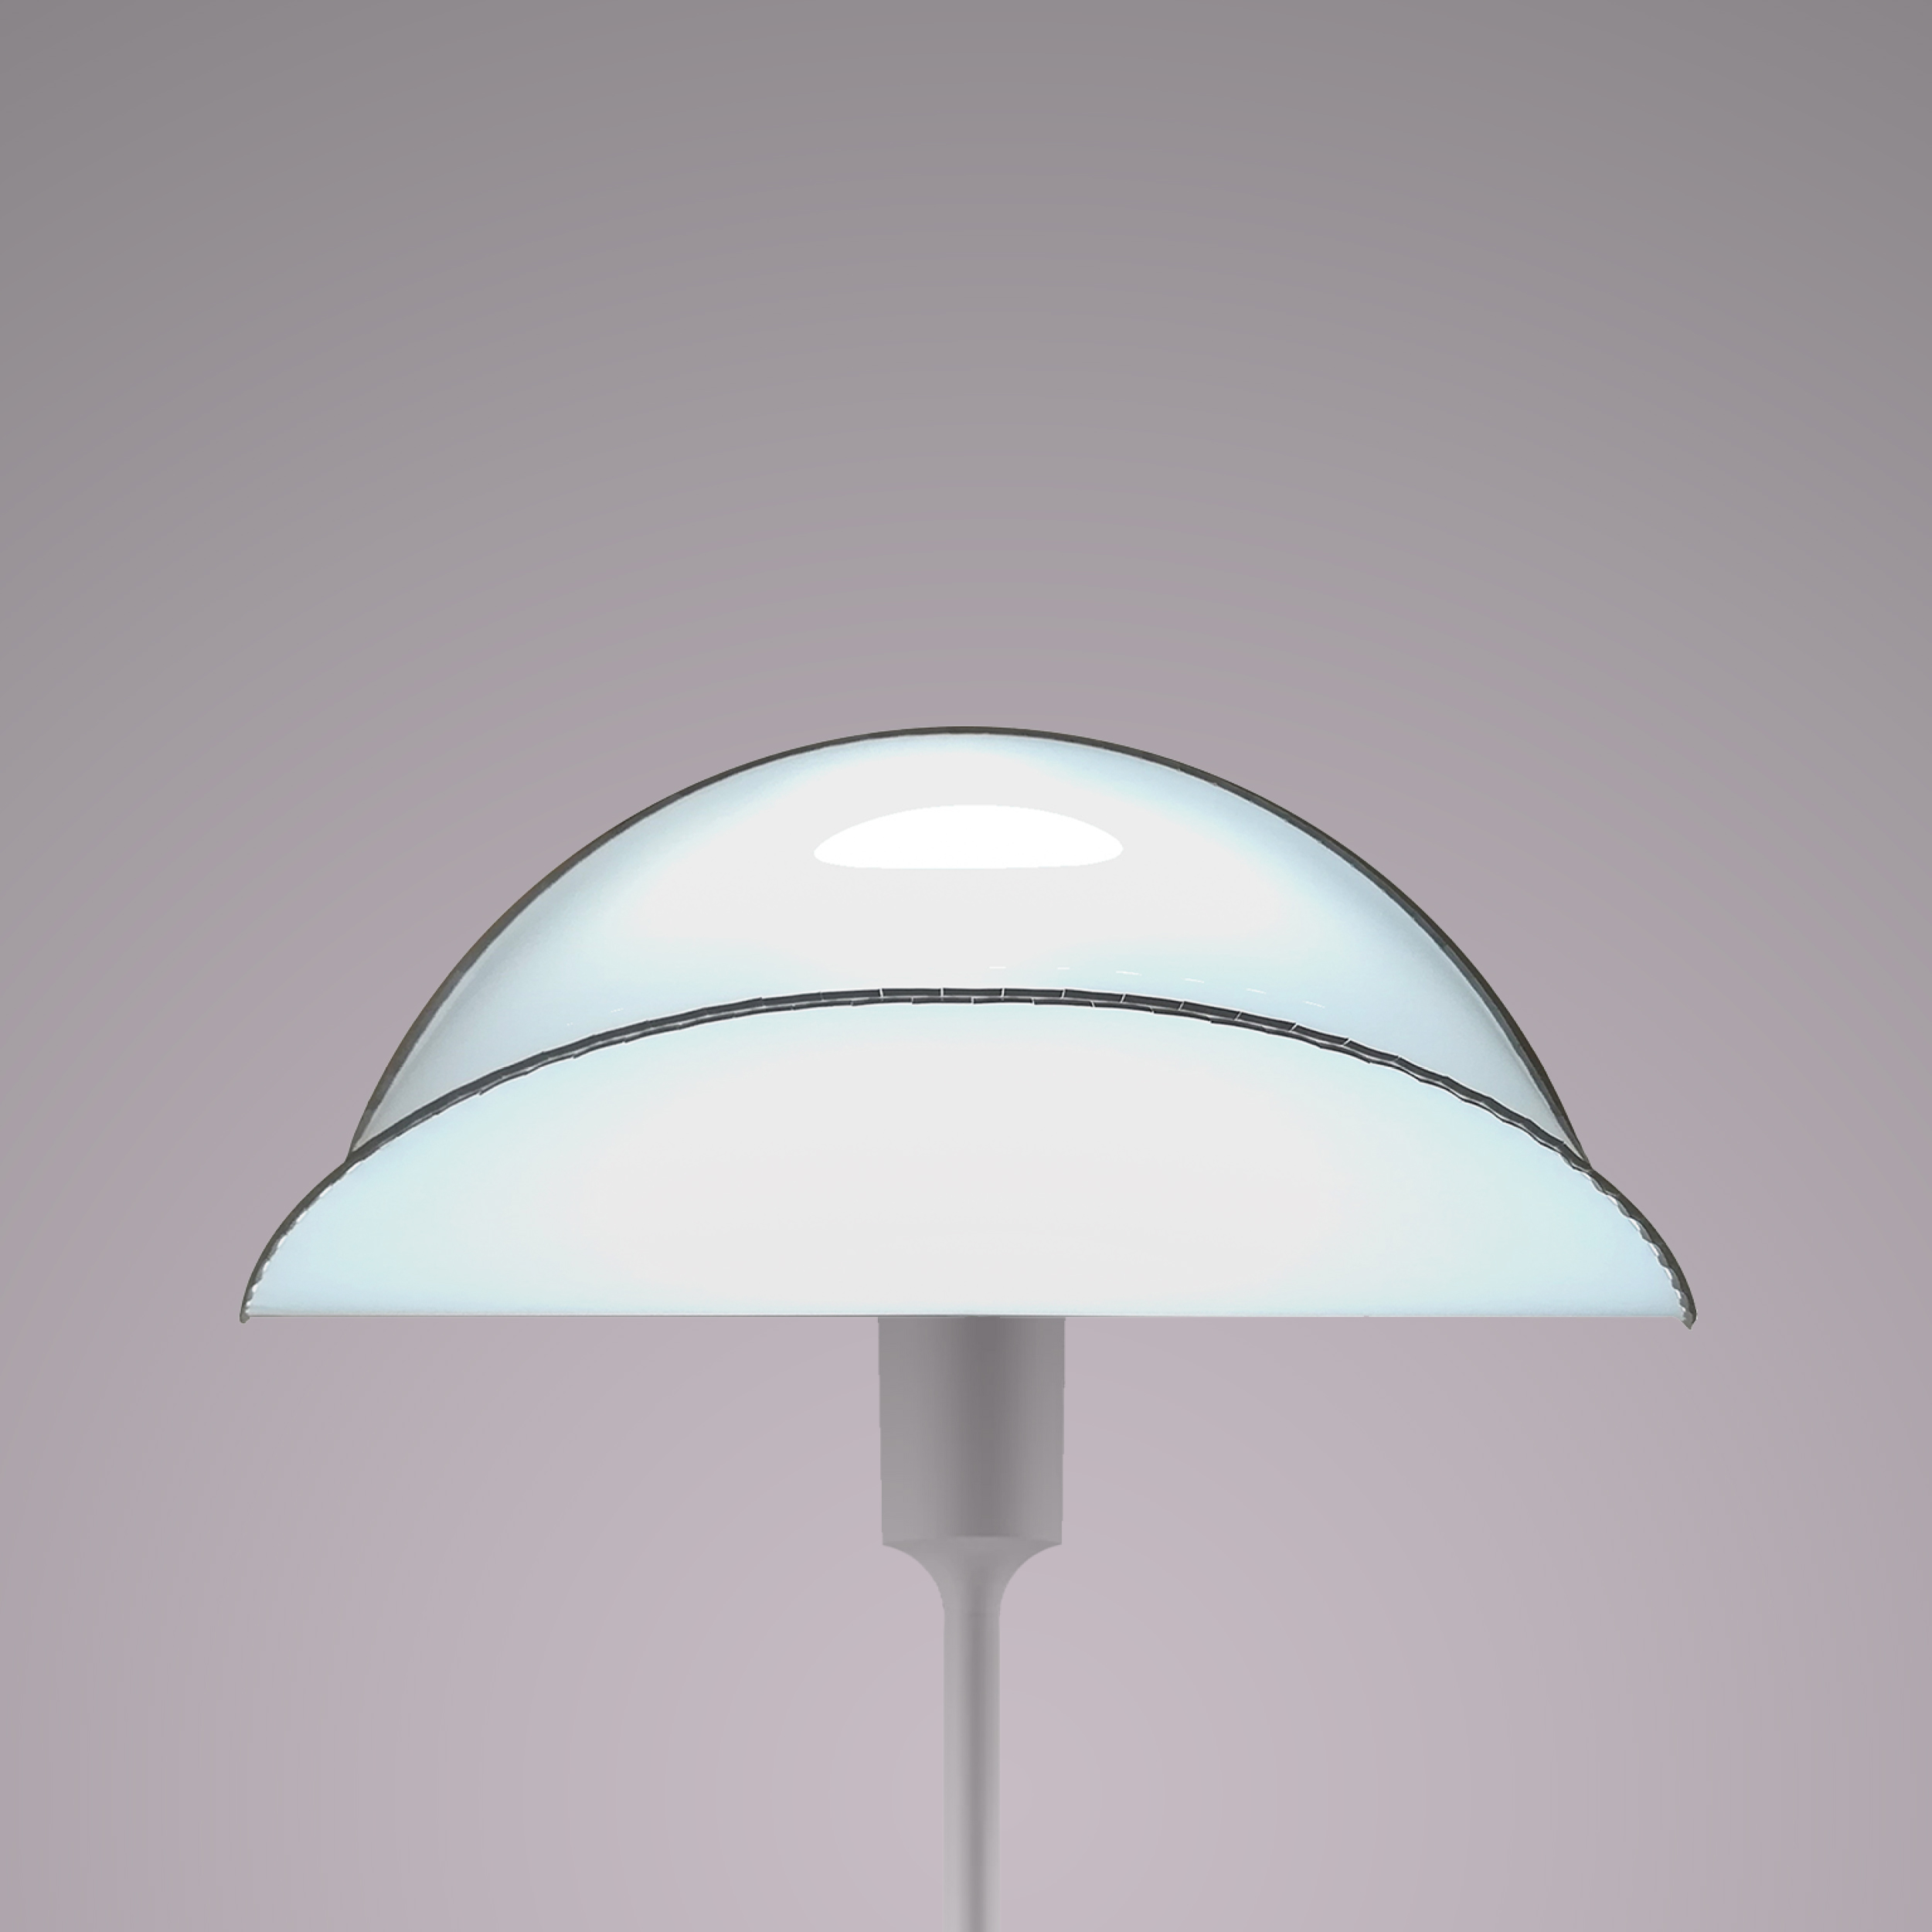 HANGING LAMP / STANDING LAMP / HORIZONTAL LAMP / SMALL SADDLE - MINI RODEO